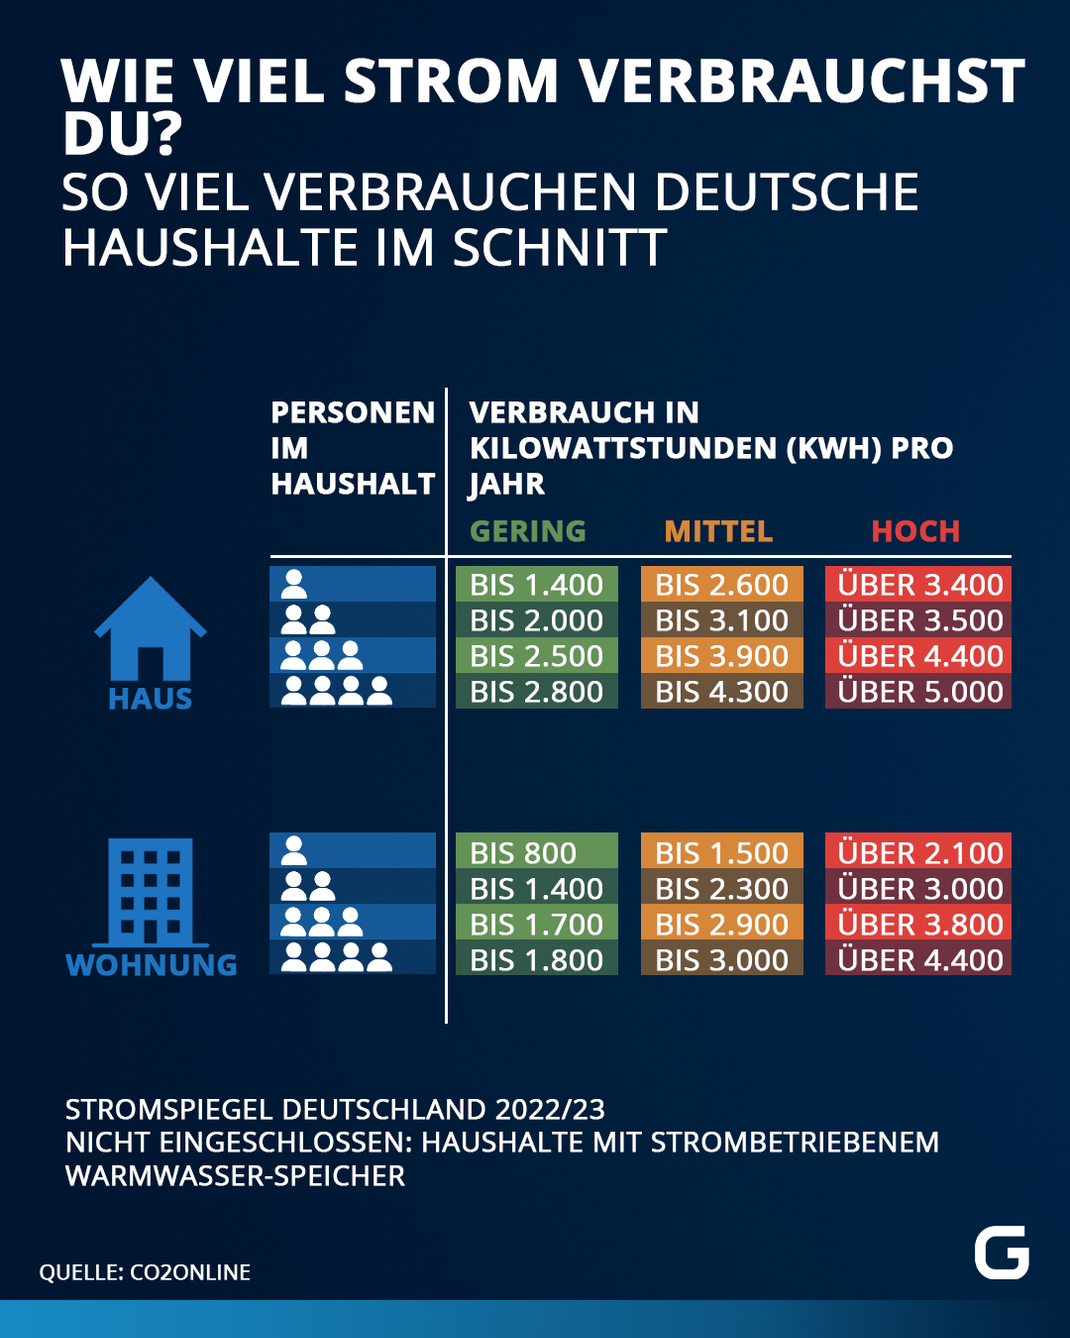 So hoch ist der Stromverbrauch in Deutschland im Durchschnitt nach Haushaltsgröße.